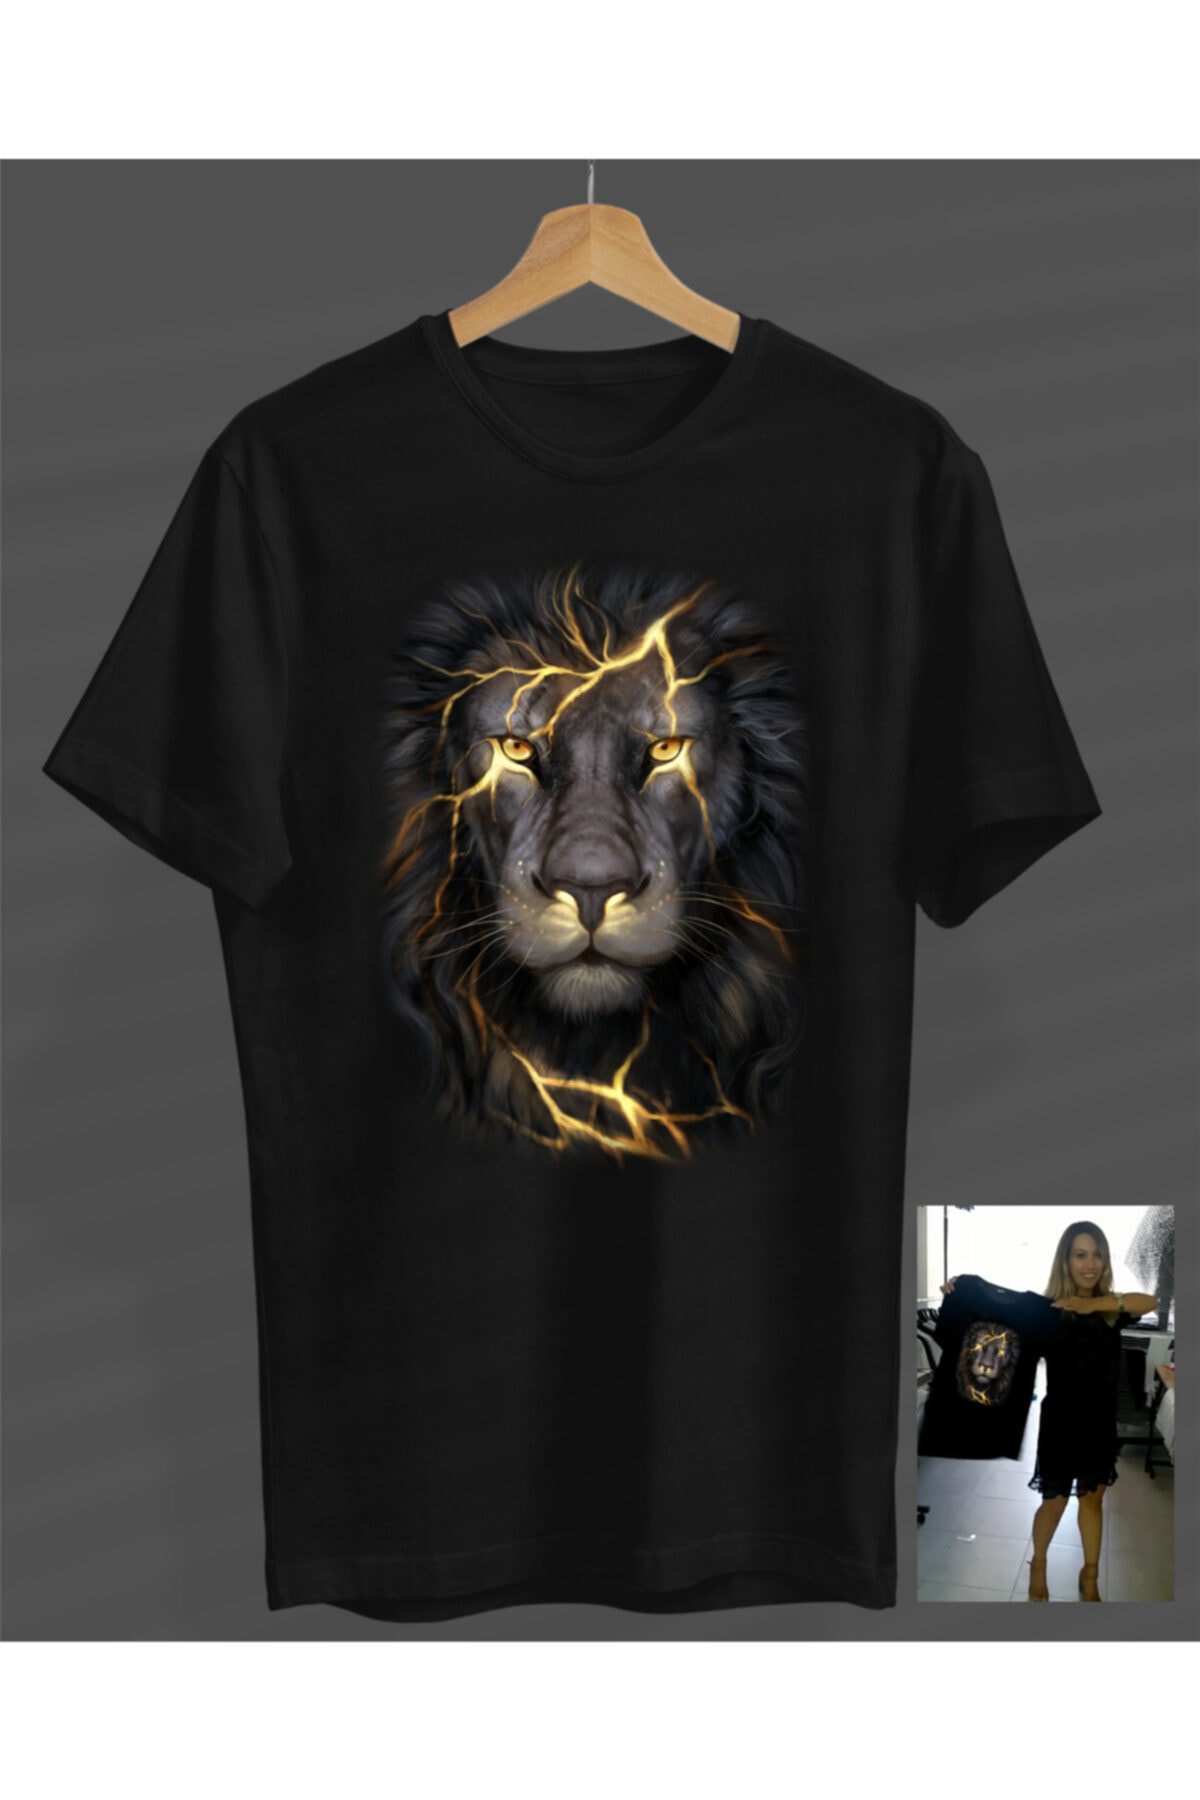 NOVUMUS Unisex Erkek-kadın Şimşek Aslan Tasarım Siyah Yuvarlak Yaka T-shirt